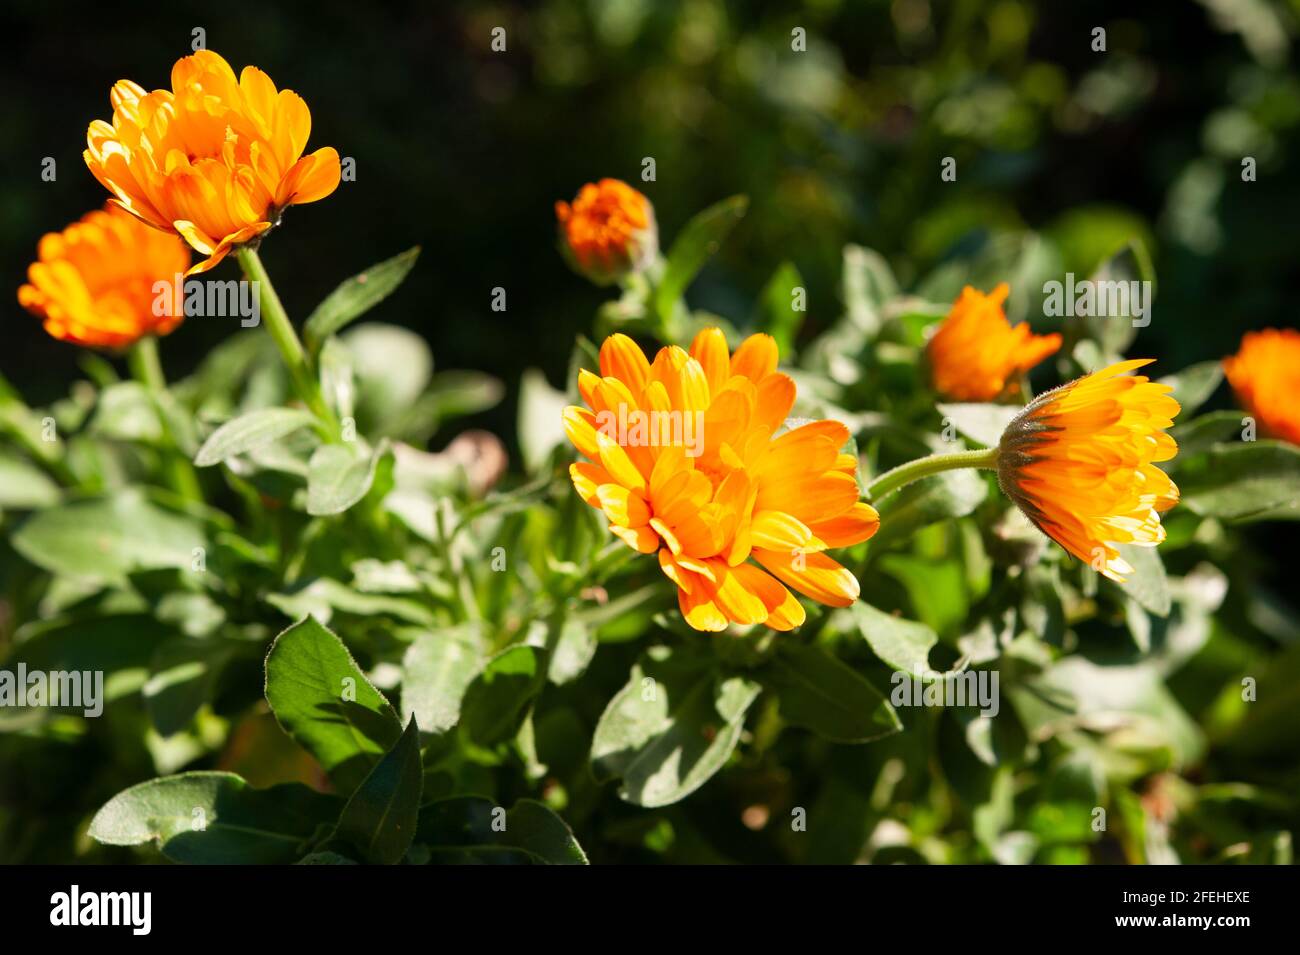 Calendula officinalis ist eine einjährige Pflanze der Familie der  Asteraceae. Gelb-orange Blume aus nächster Nähe Stockfotografie - Alamy